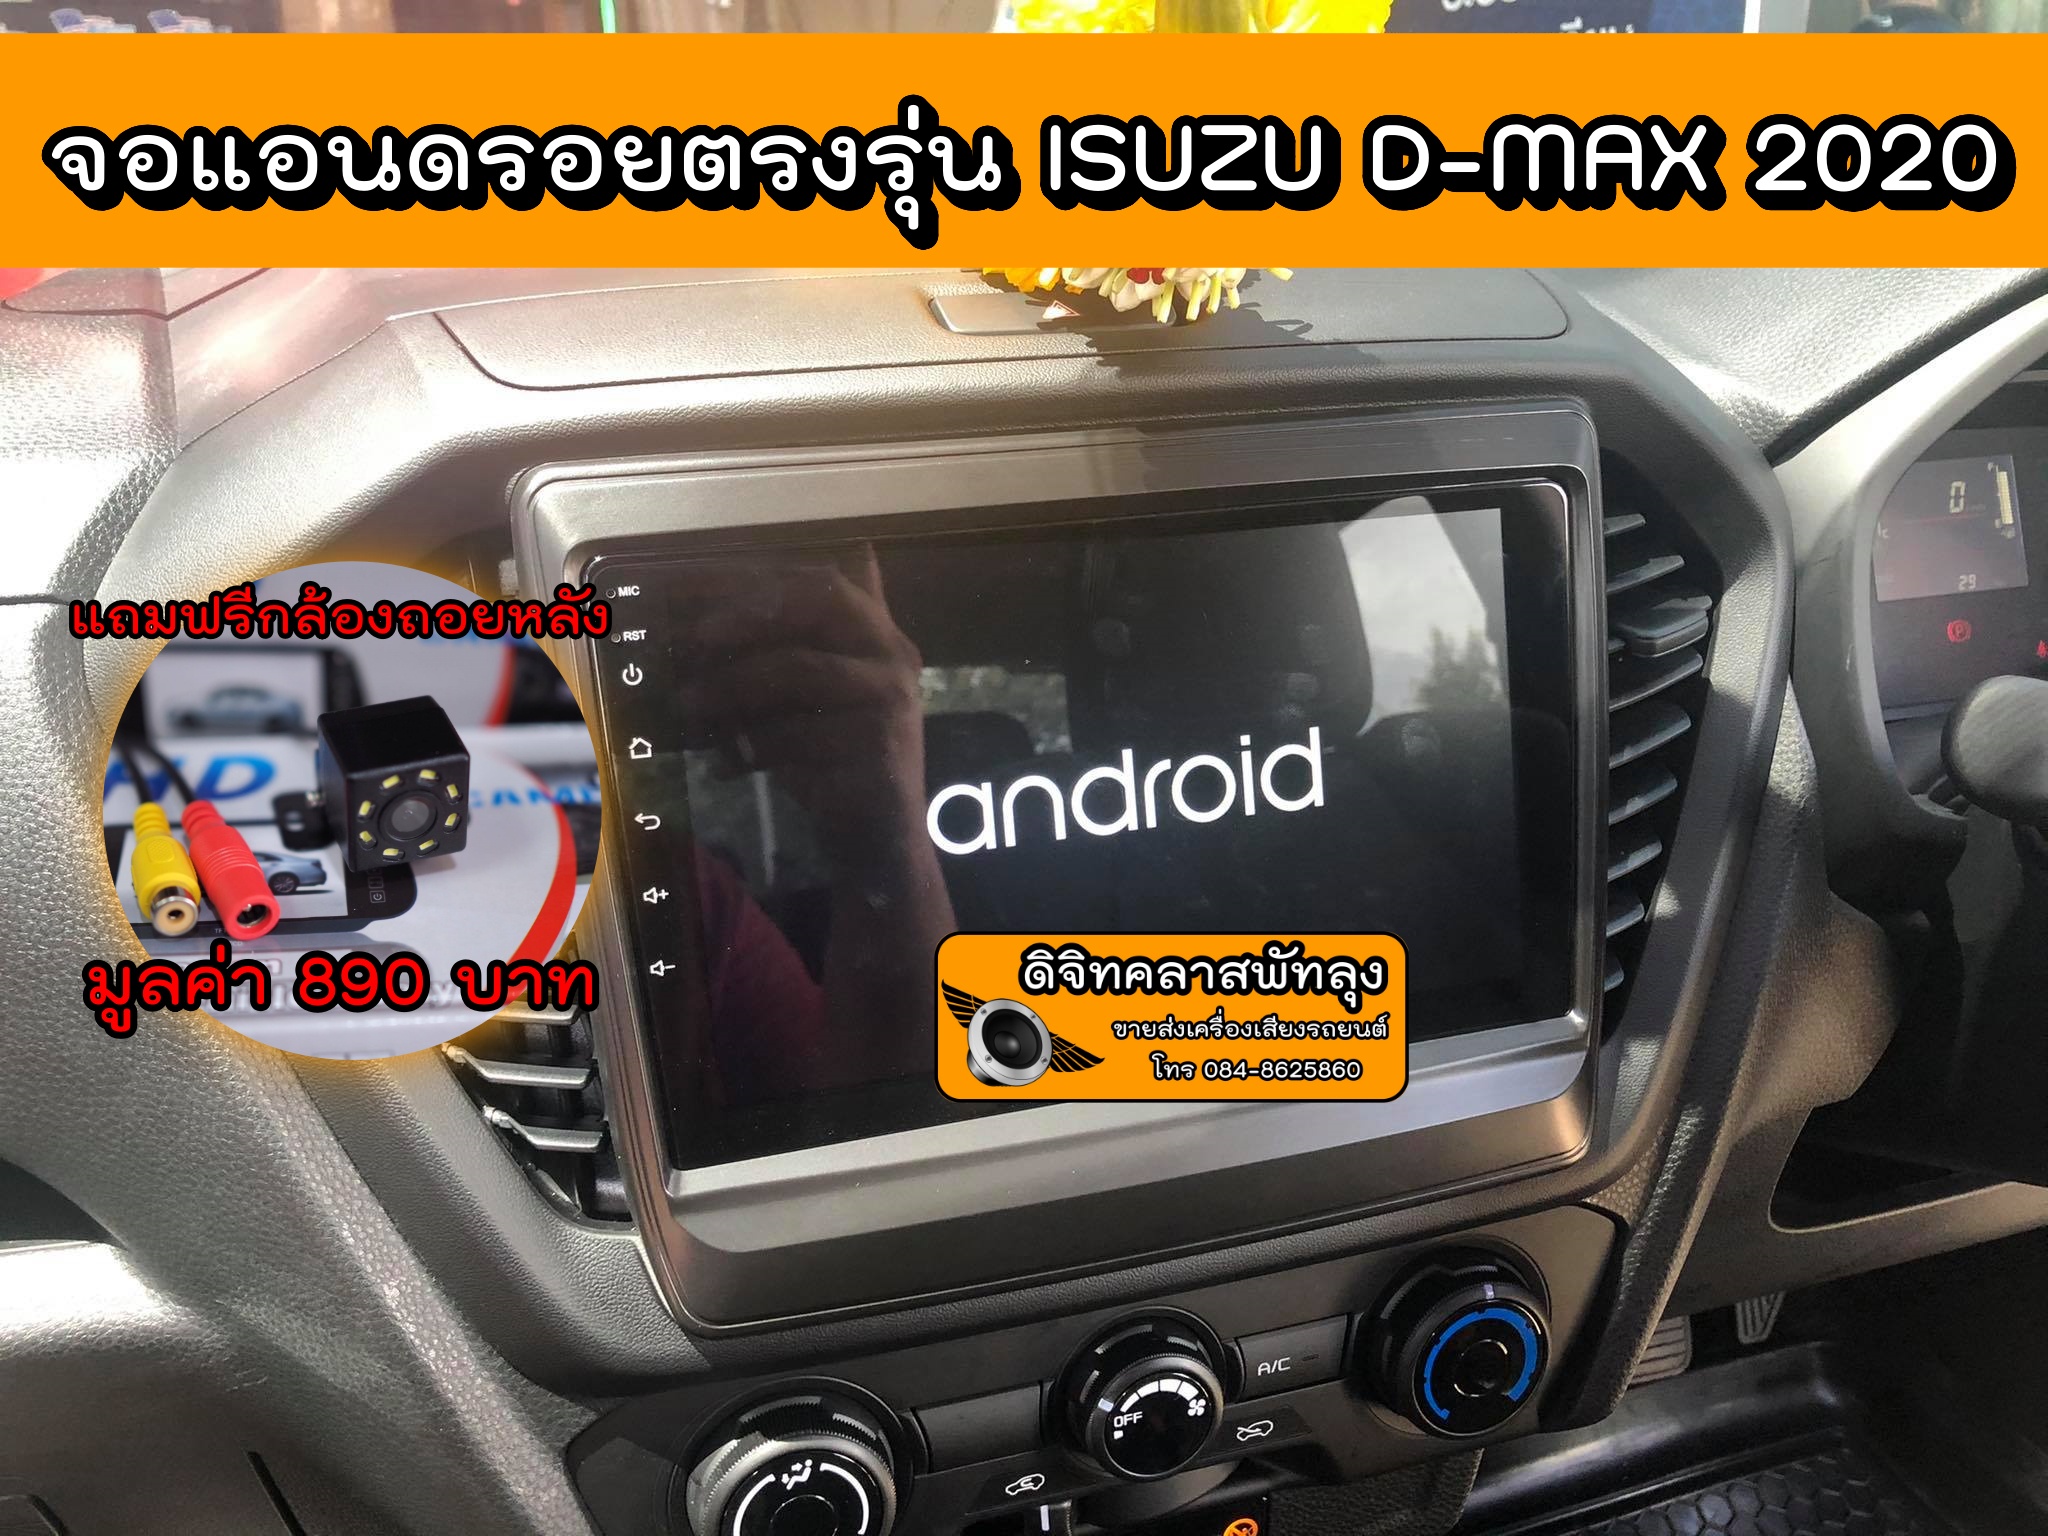 เครื่องเสียงรถ วิทยุติดรถยนต์ ตรงรุ่นรถ D-MAX ปี 2020 Android 10 RAM 2 ROM 16 มาพร้อมปลั๊กตรงรุ่นไม่ต้องตัดต่อสาย แถมฟรี กล้องมองหลัง